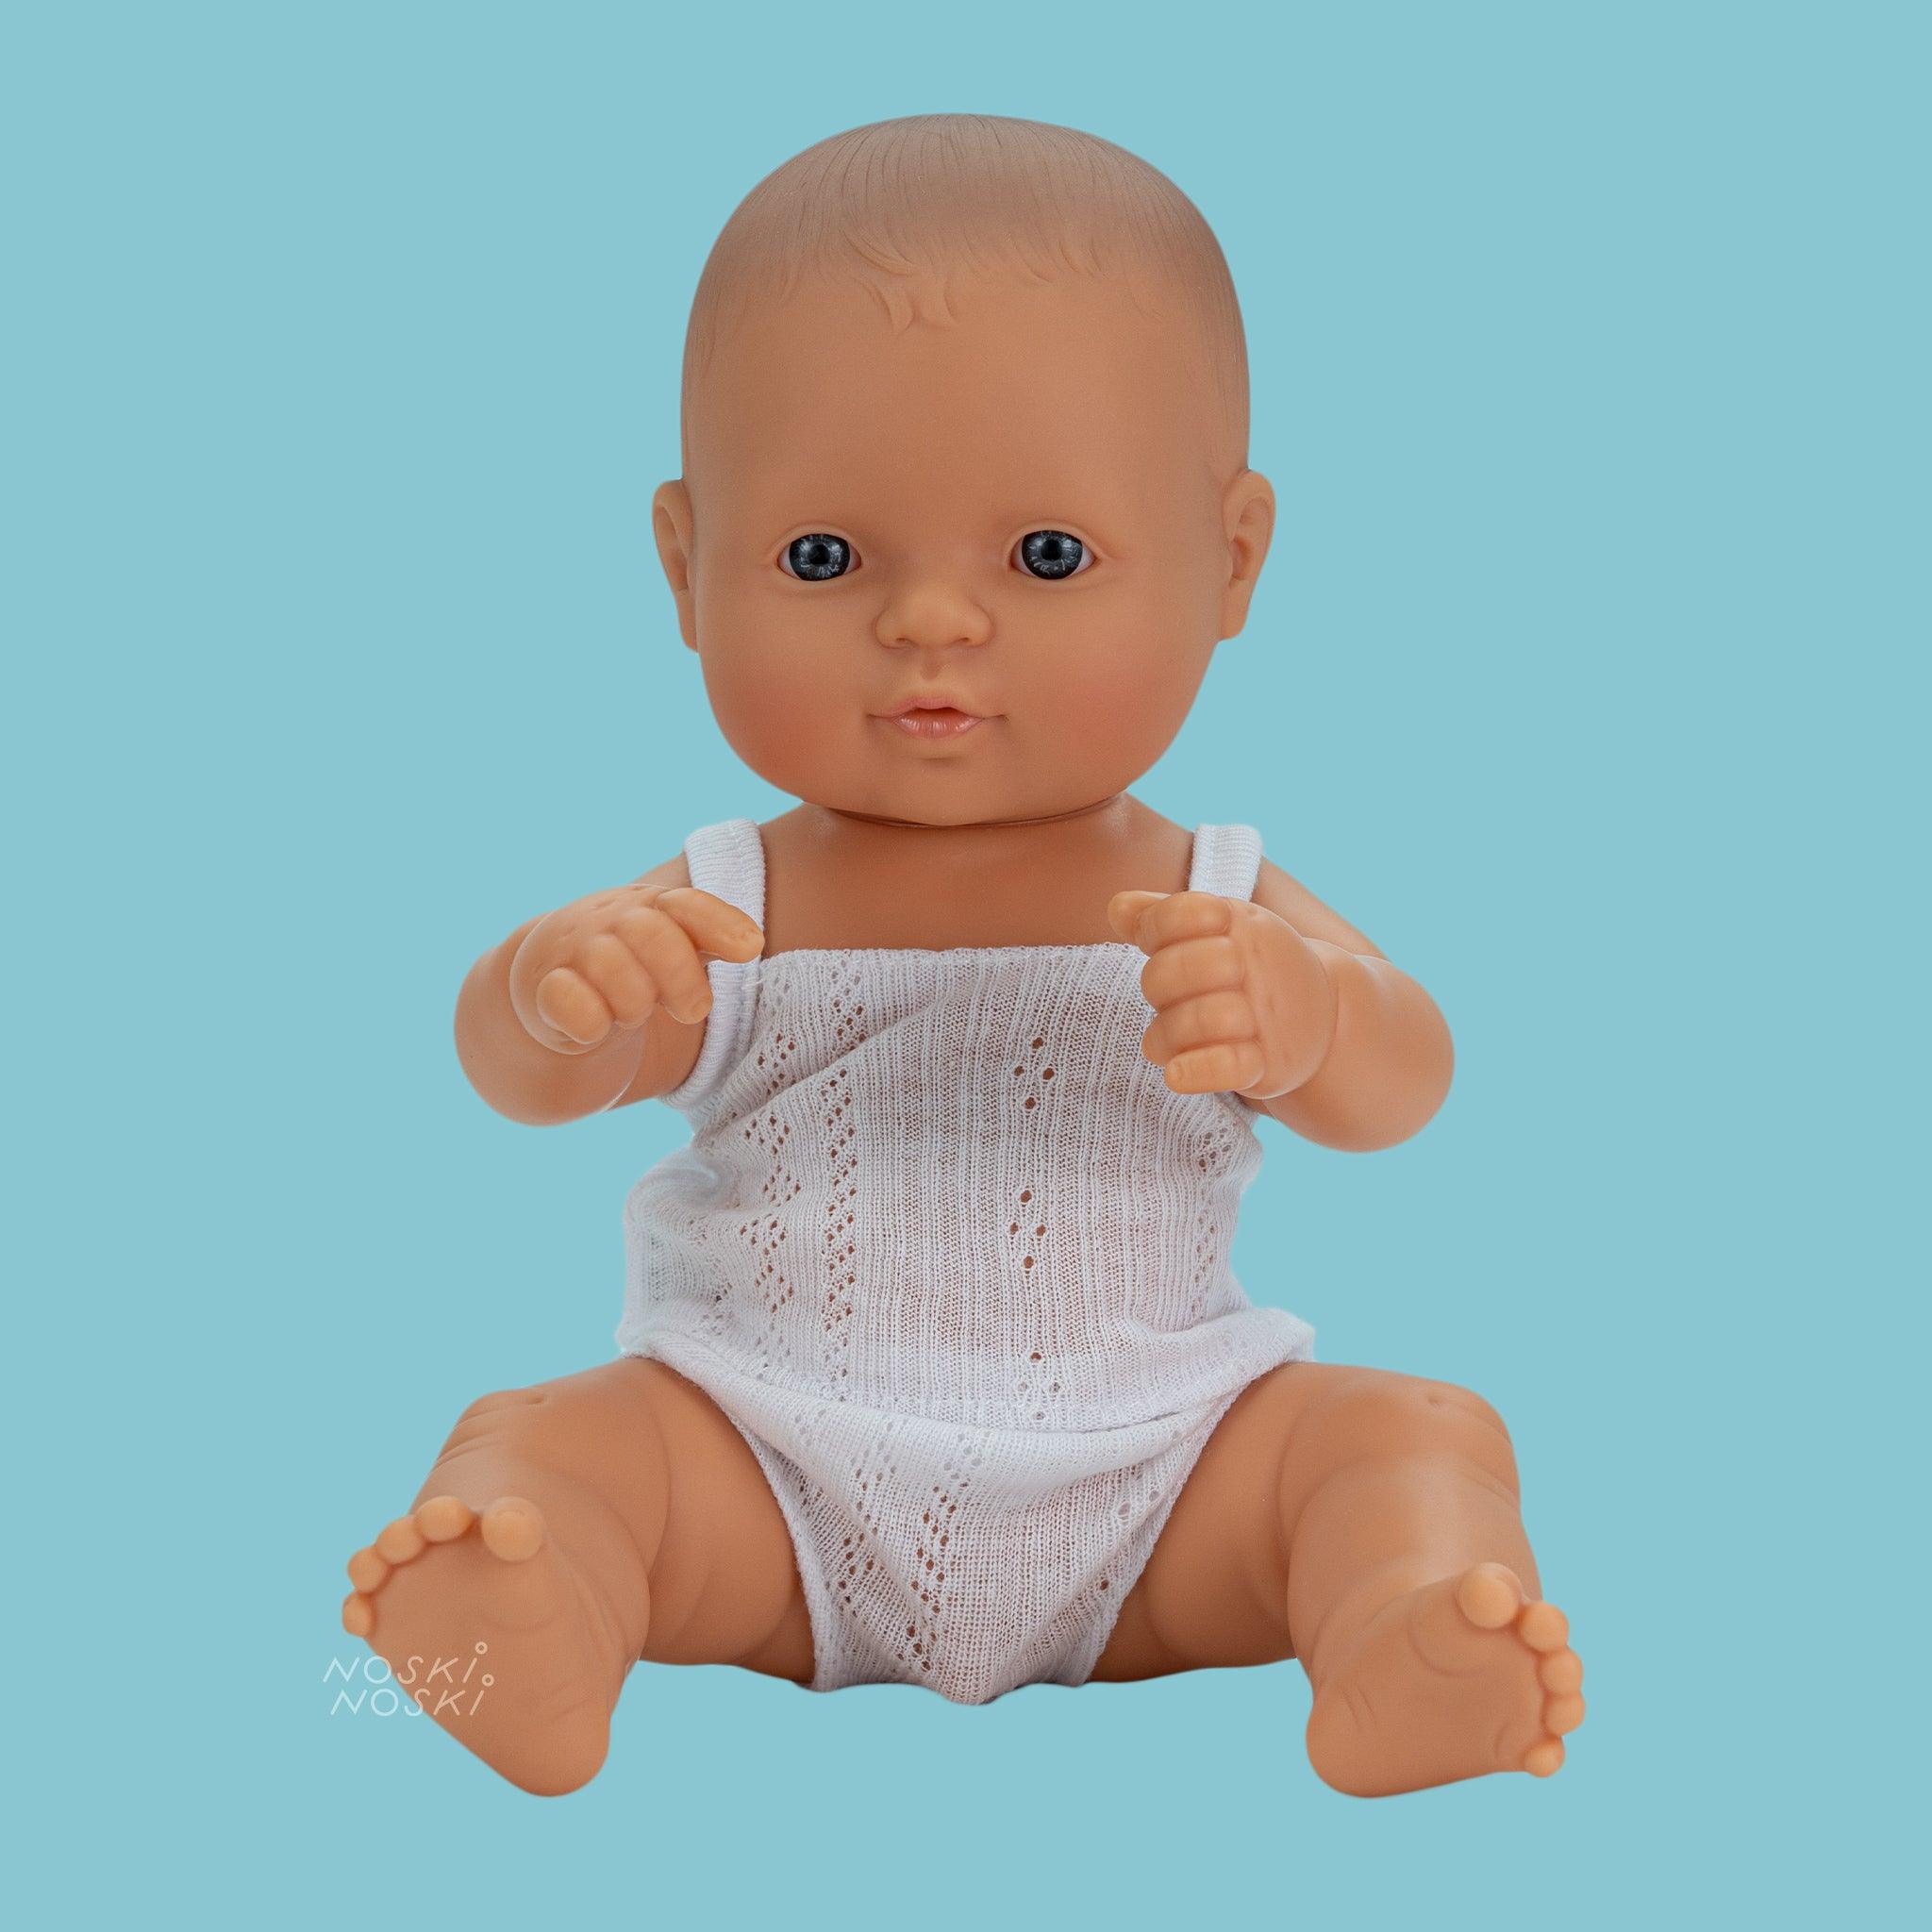 Miniland: lalka dzidziuś chłopiec Europejczyk 32 cm - Noski Noski